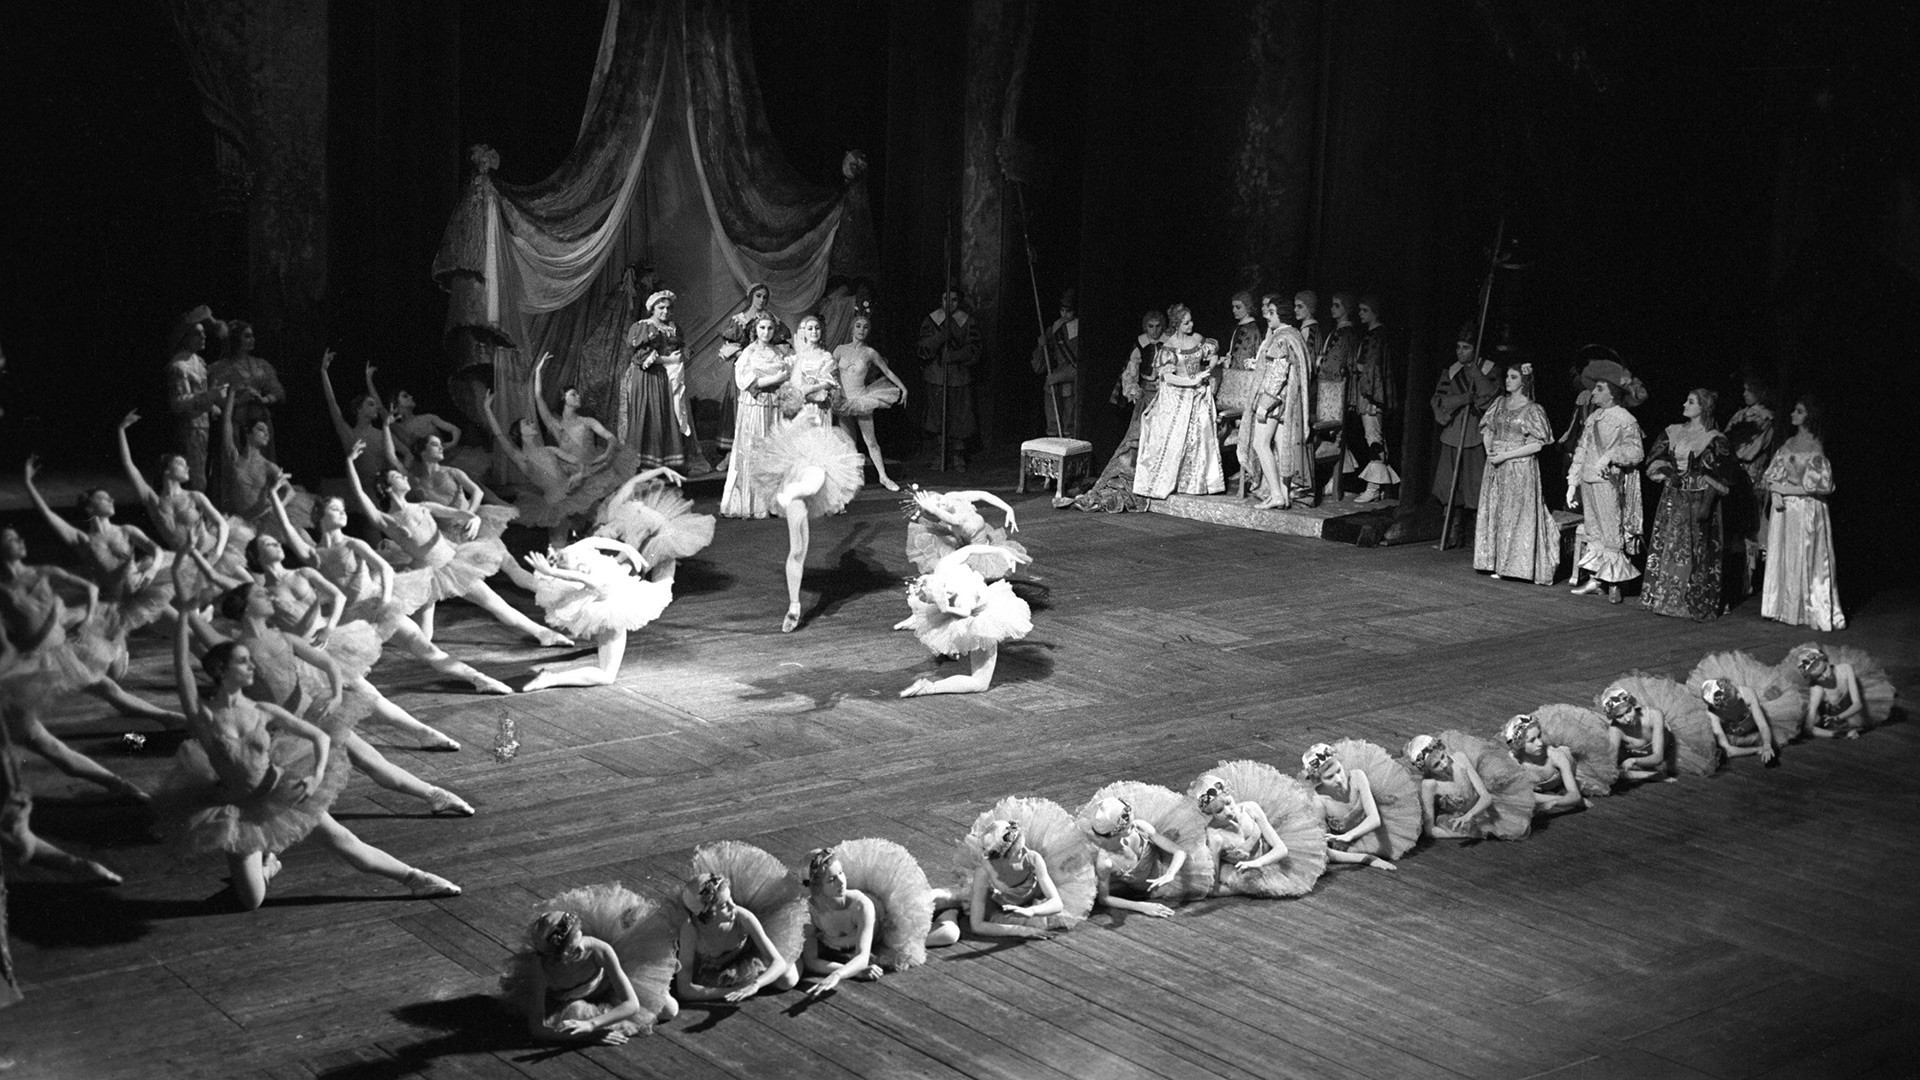 Teatro de Ópera e Balé Kirov. “A Bela Adormecida”, musical de Tchaikóvsky, montagem de Petipa.
